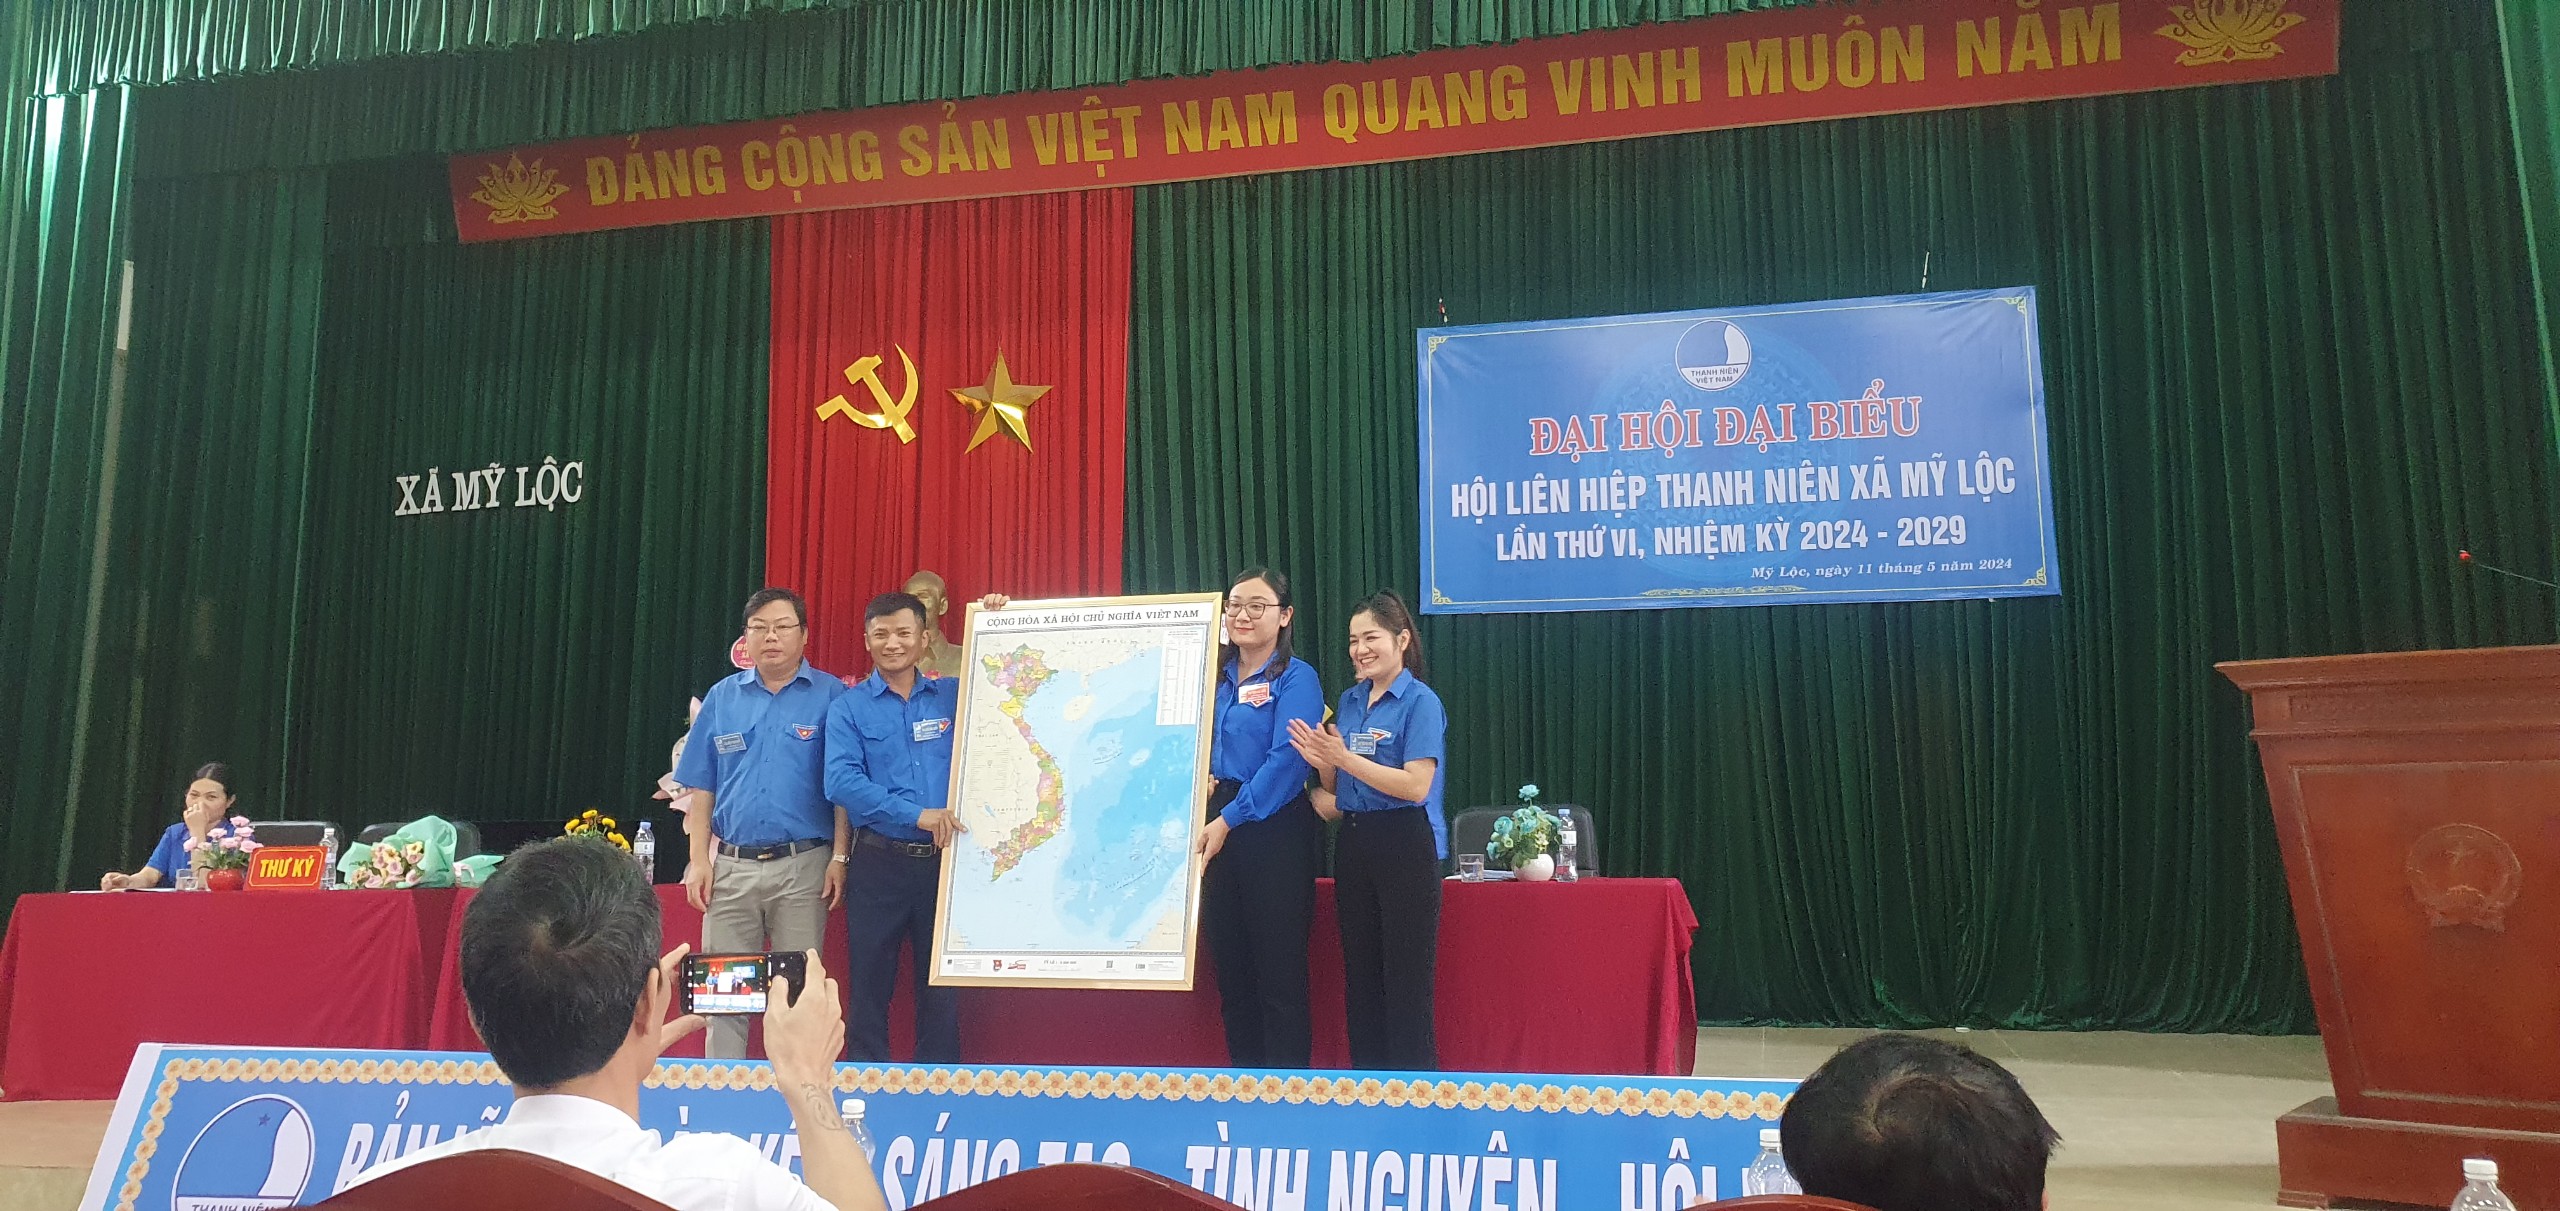 Hội LHTN Việt Nam xã  Mỹ Lộc tổ chức thành công Đại hội đại biểu Hội LHTN Việt Nam xã  Mỹ Lộc lần thứ 6, nhiệm kỳ 2024-2029.